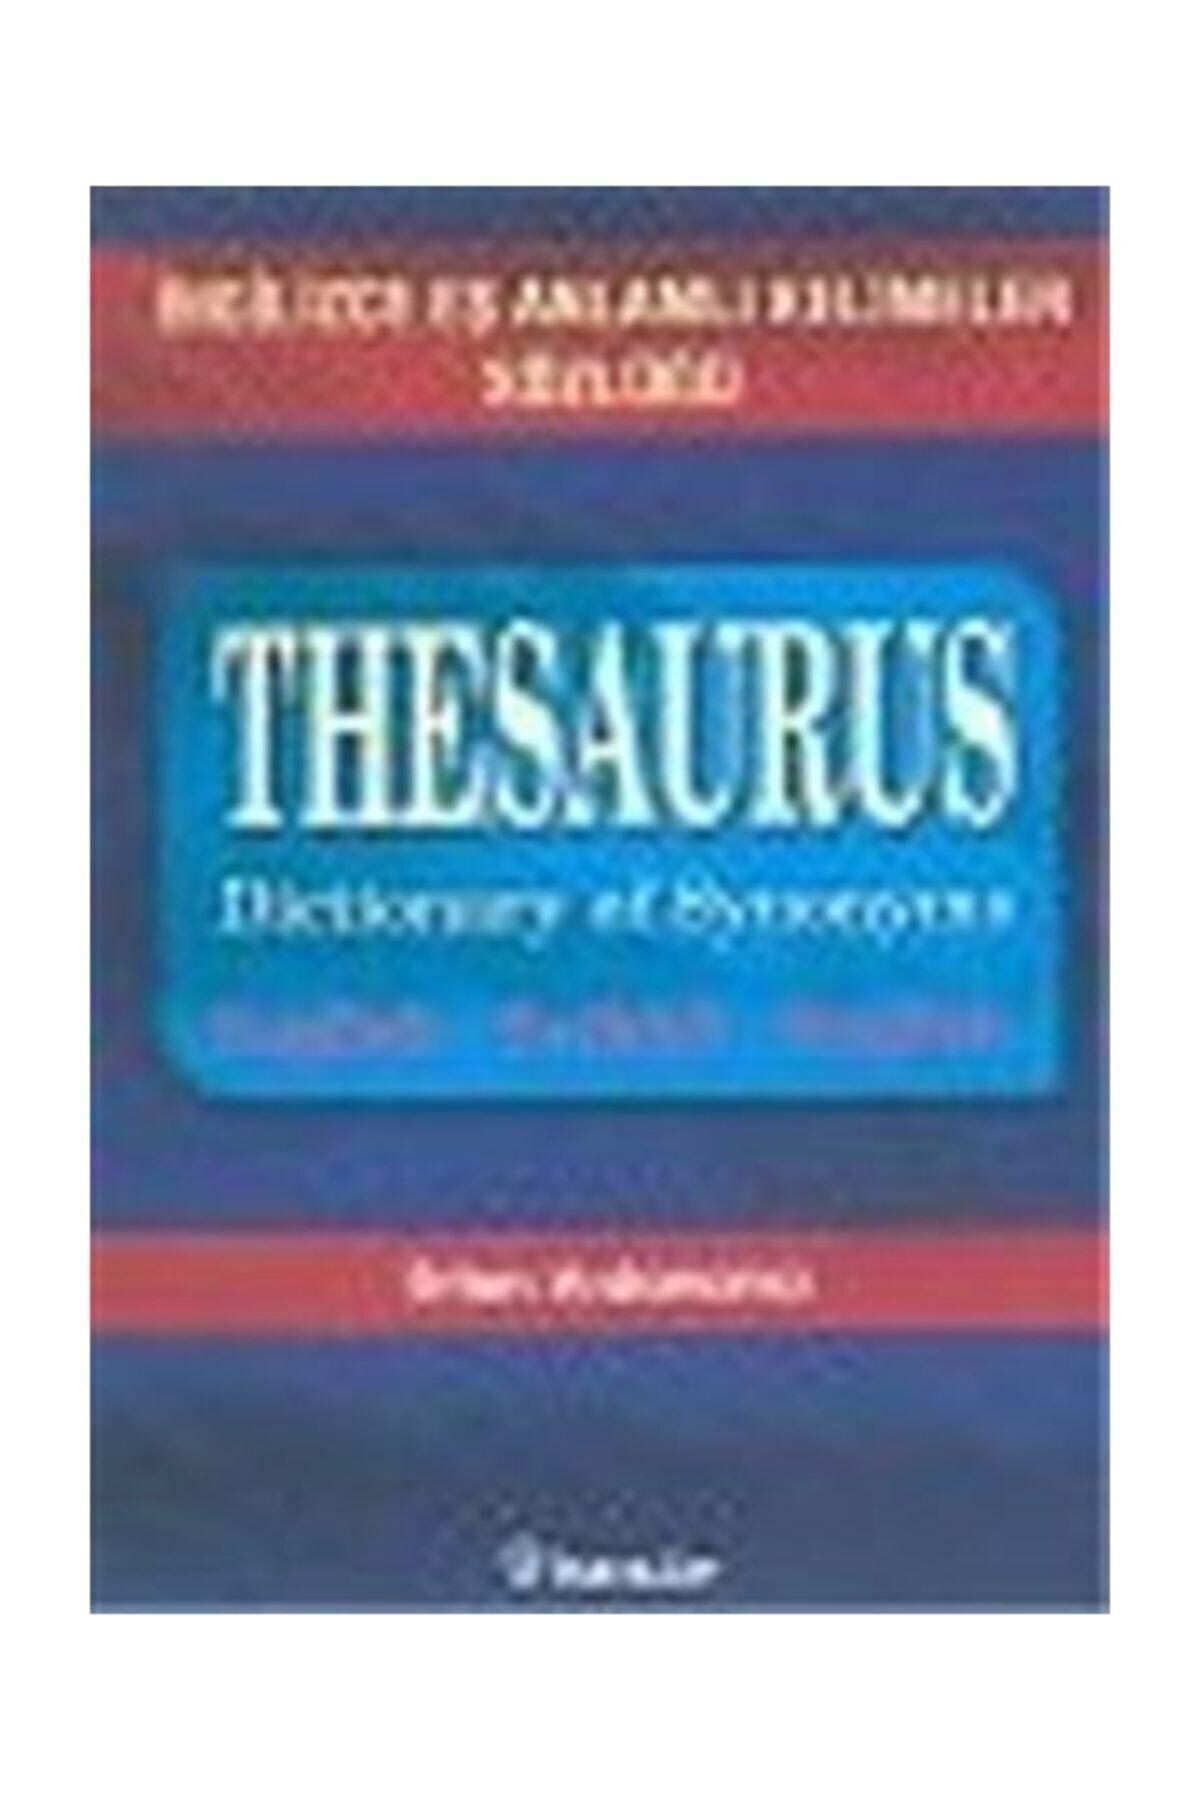 İnkılap Kitabevi İngilizce Eş Anlamlı Kelimeler Sözlüğü Thesaurus Dictionary Of Synonyms